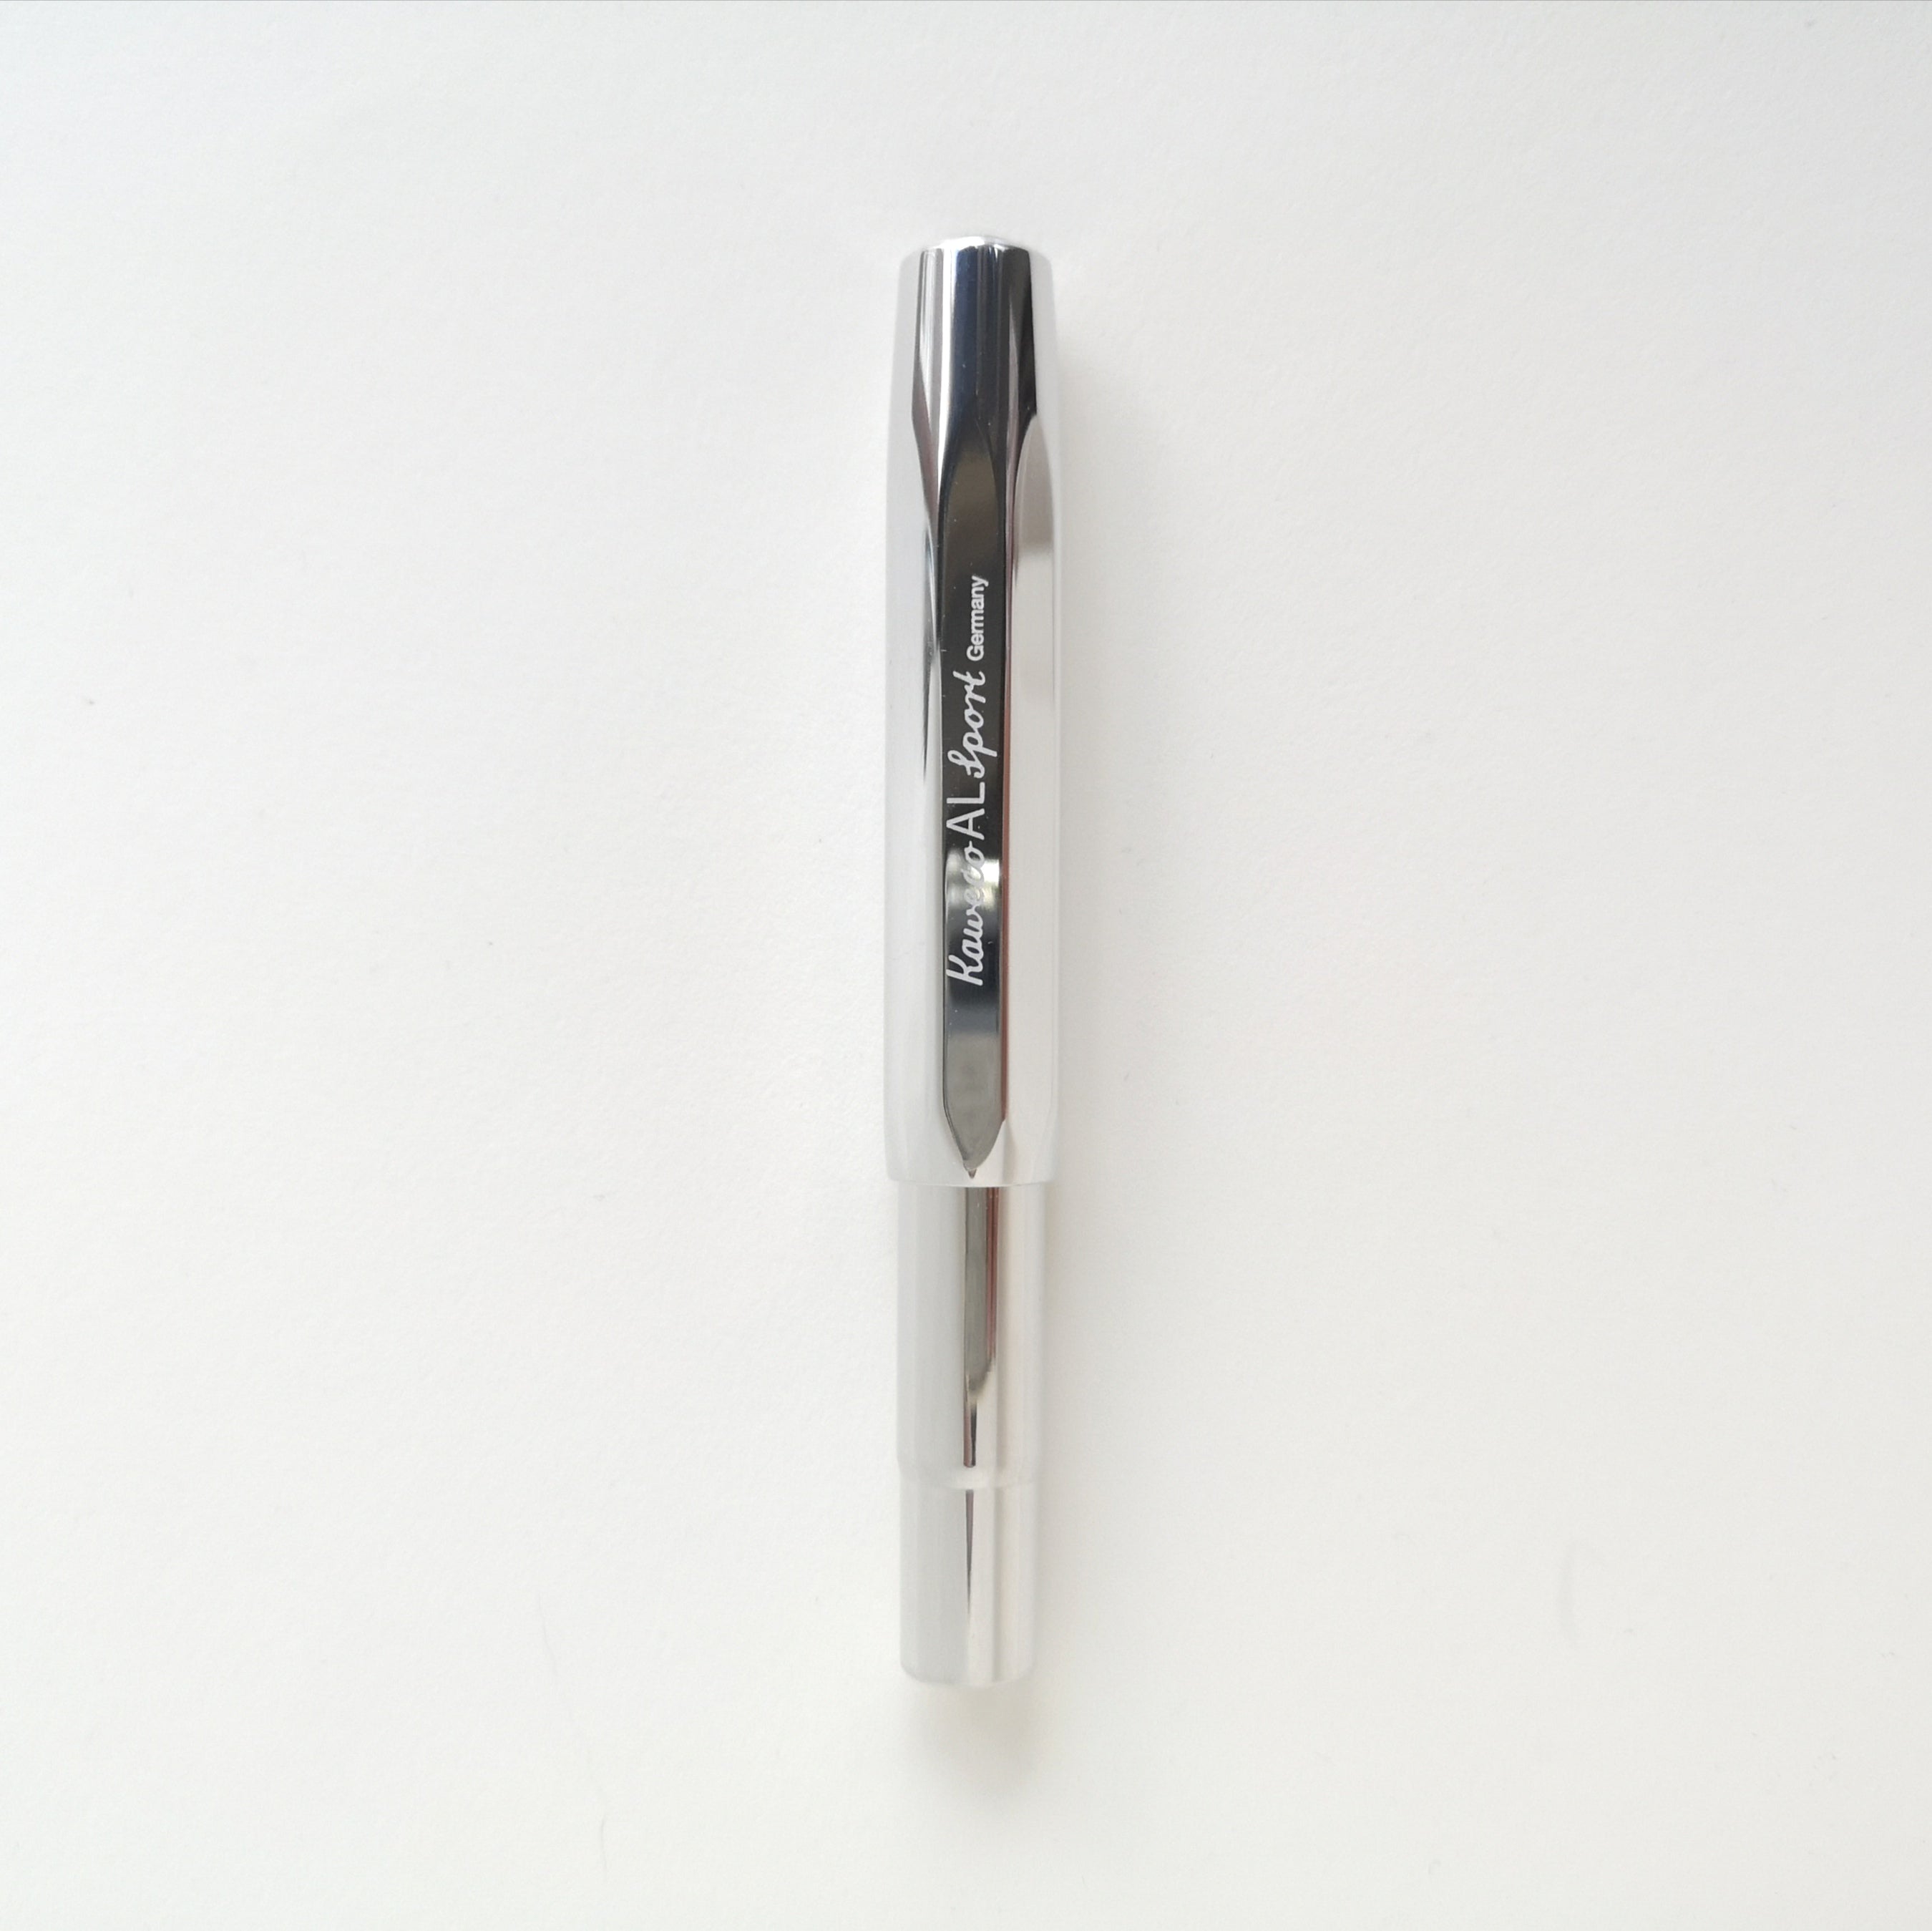 Shiny Aluminium Kaweco Sport Fountain Pen with cap on